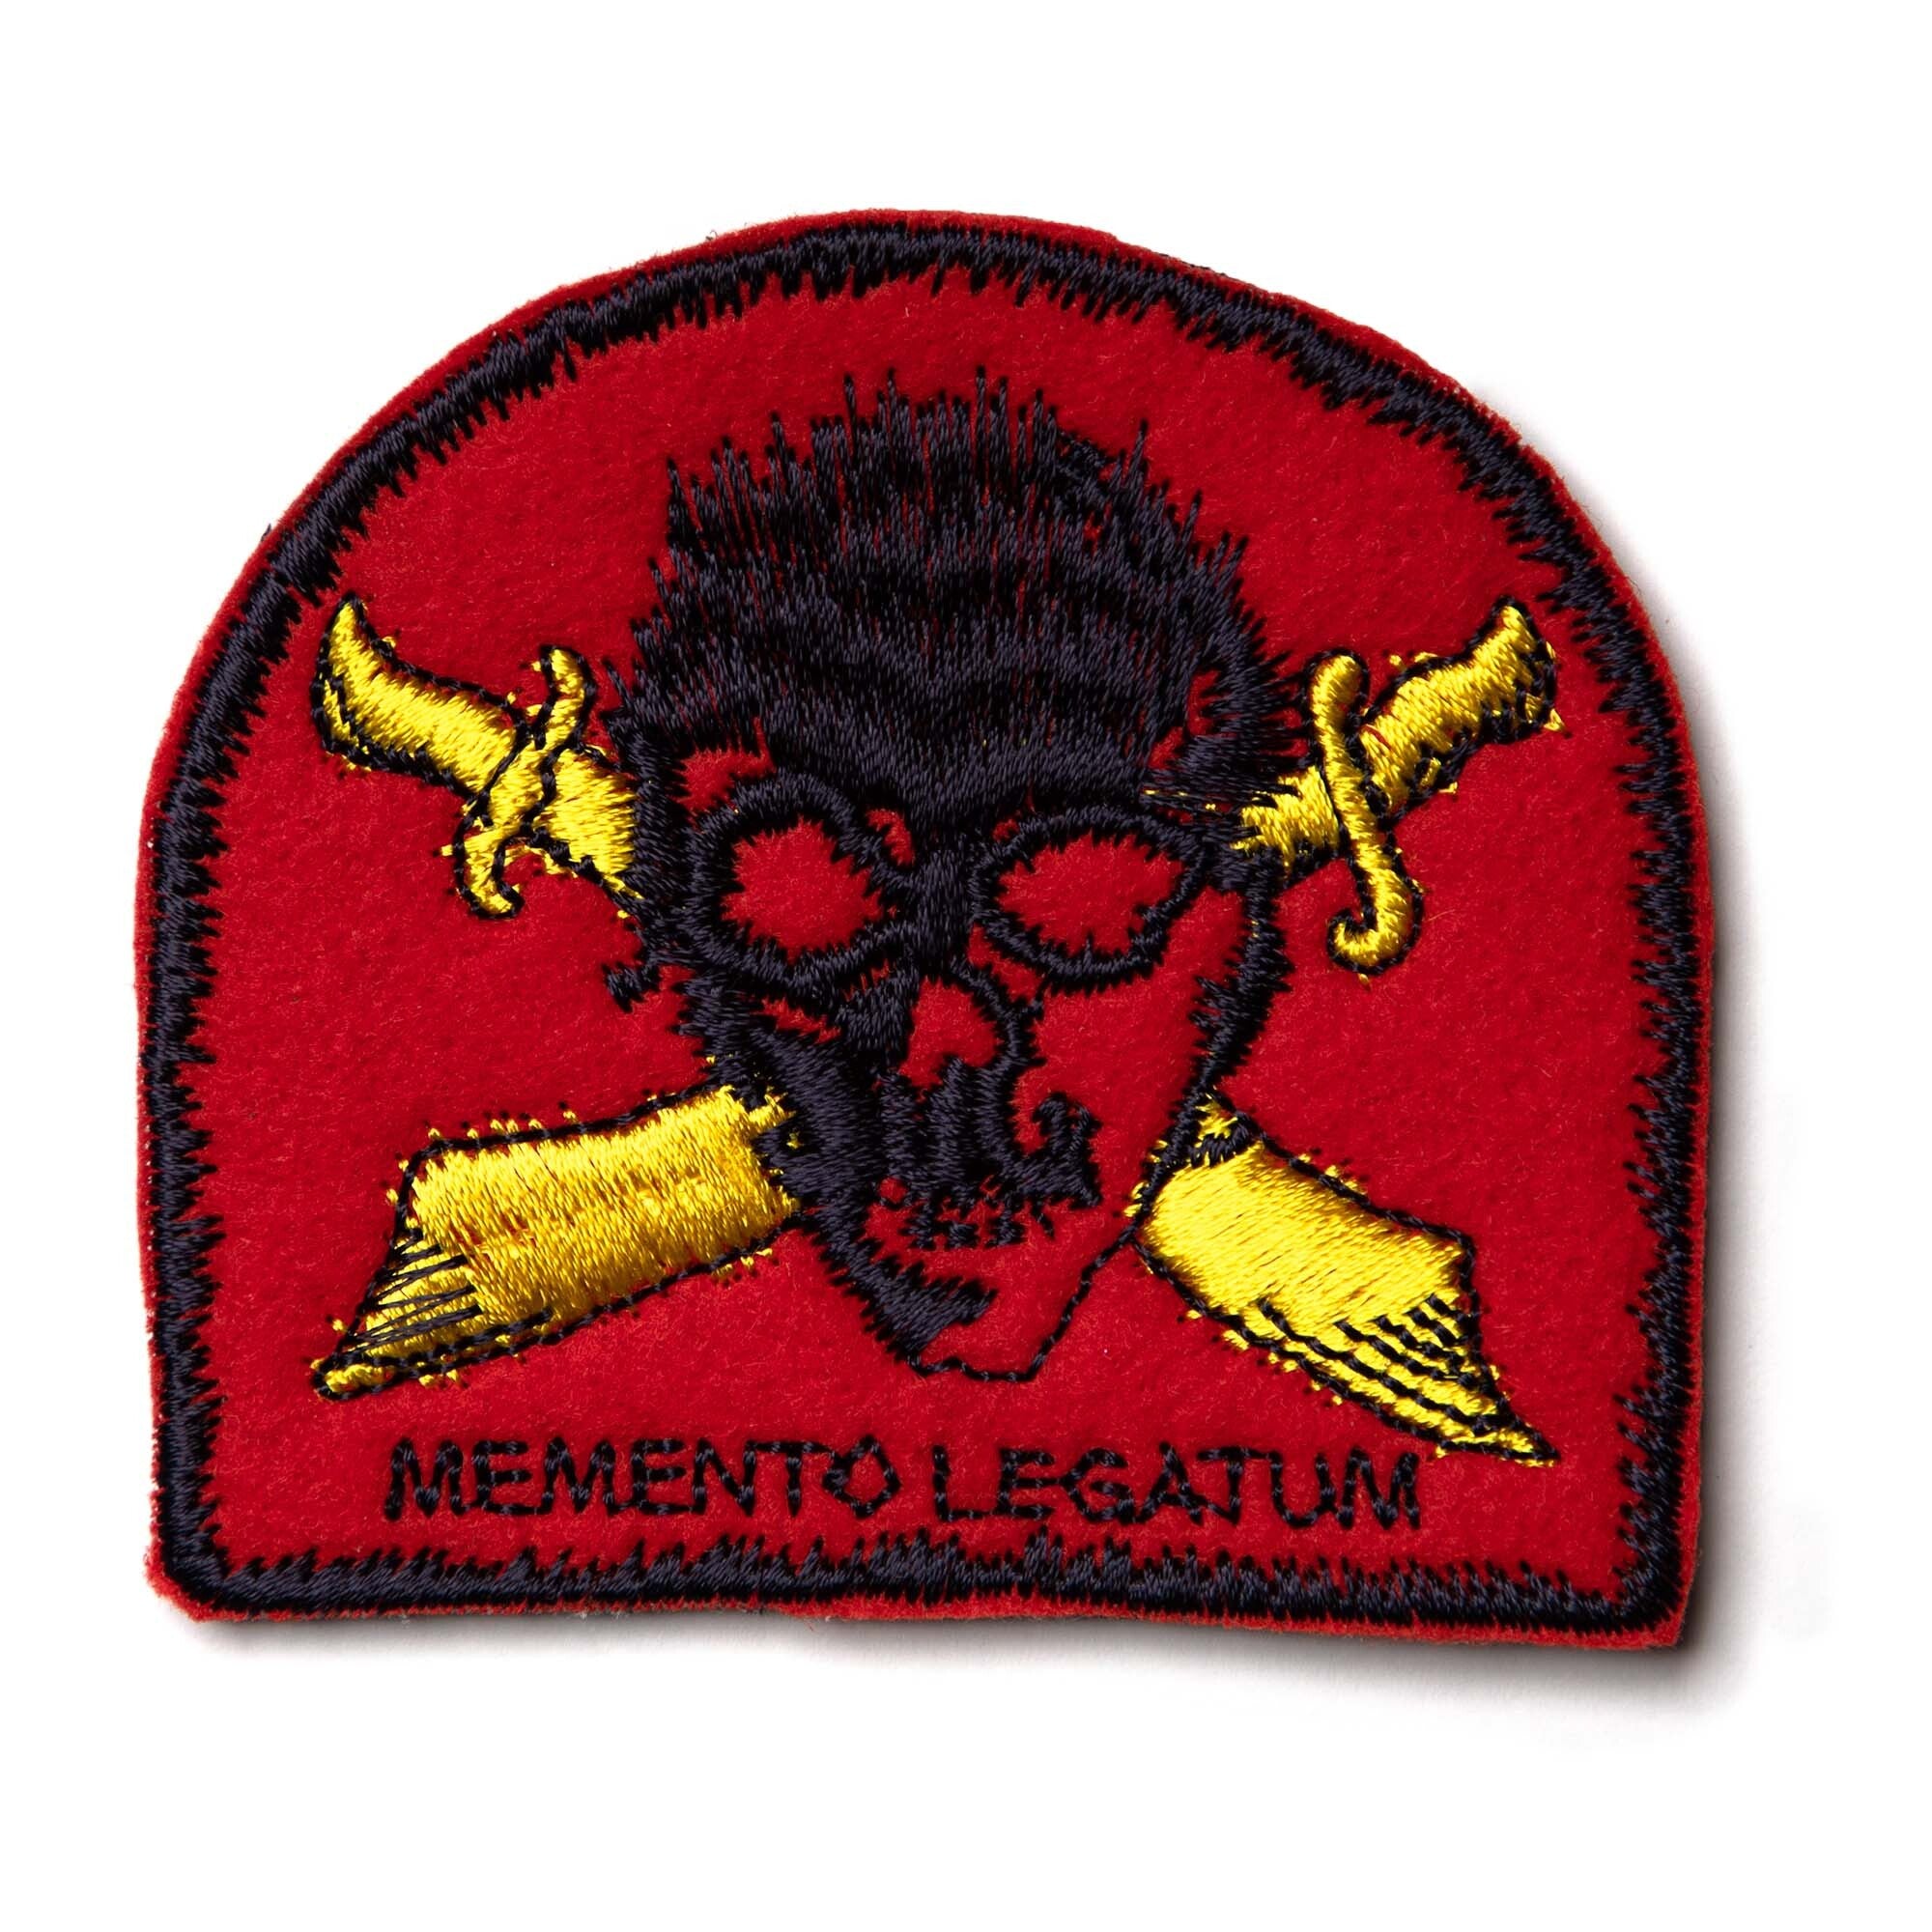 Marine Raiders "Memento Legatum" Patch